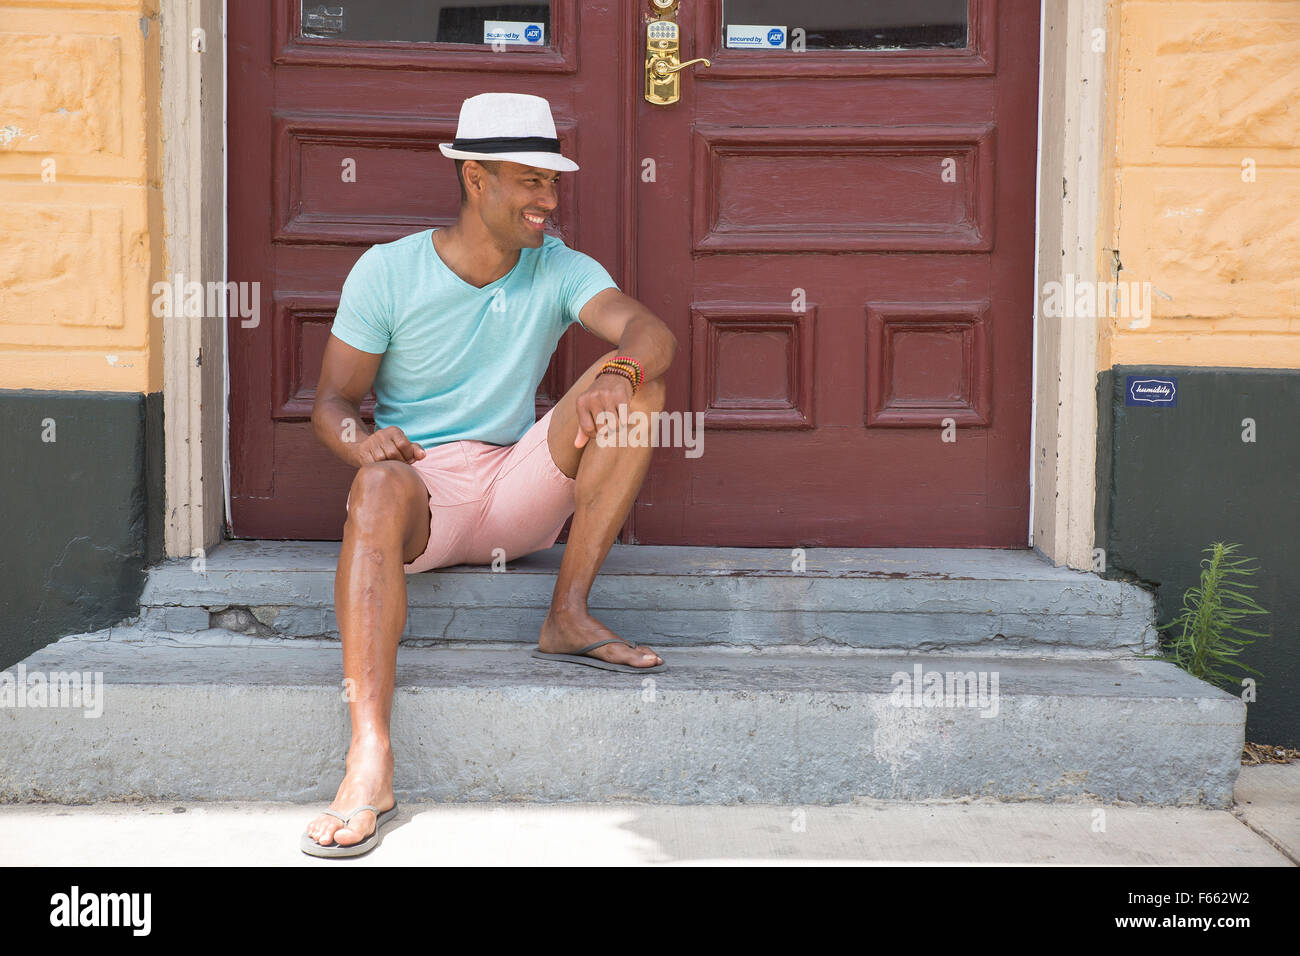 Eine ethnisch vieldeutigen Mann mit einem hellen Grün t-shirt, rosa Shorts, Sonnenbrillen und Fedora auf einem Stoop außerhalb eines mit nach Hause Gebrannte Umbra Doppeltüren. Stockfoto